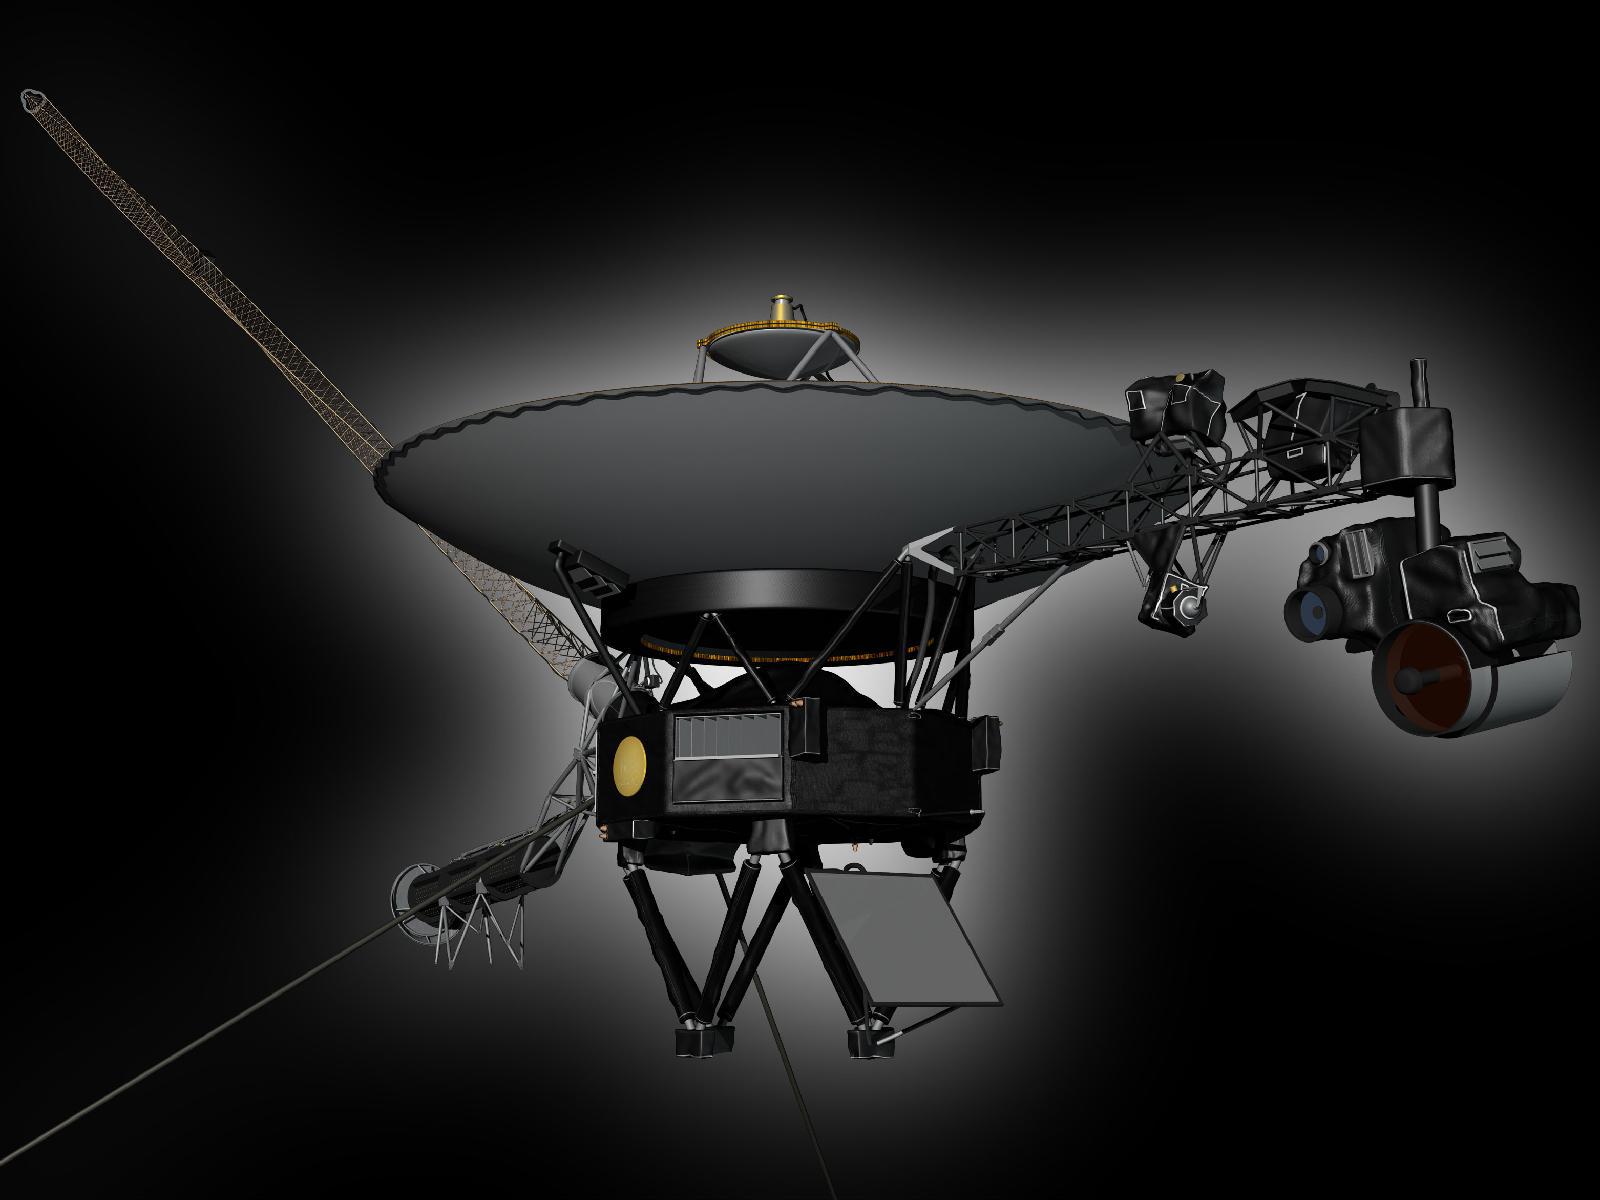 slide 1 - Voyager spacecraft